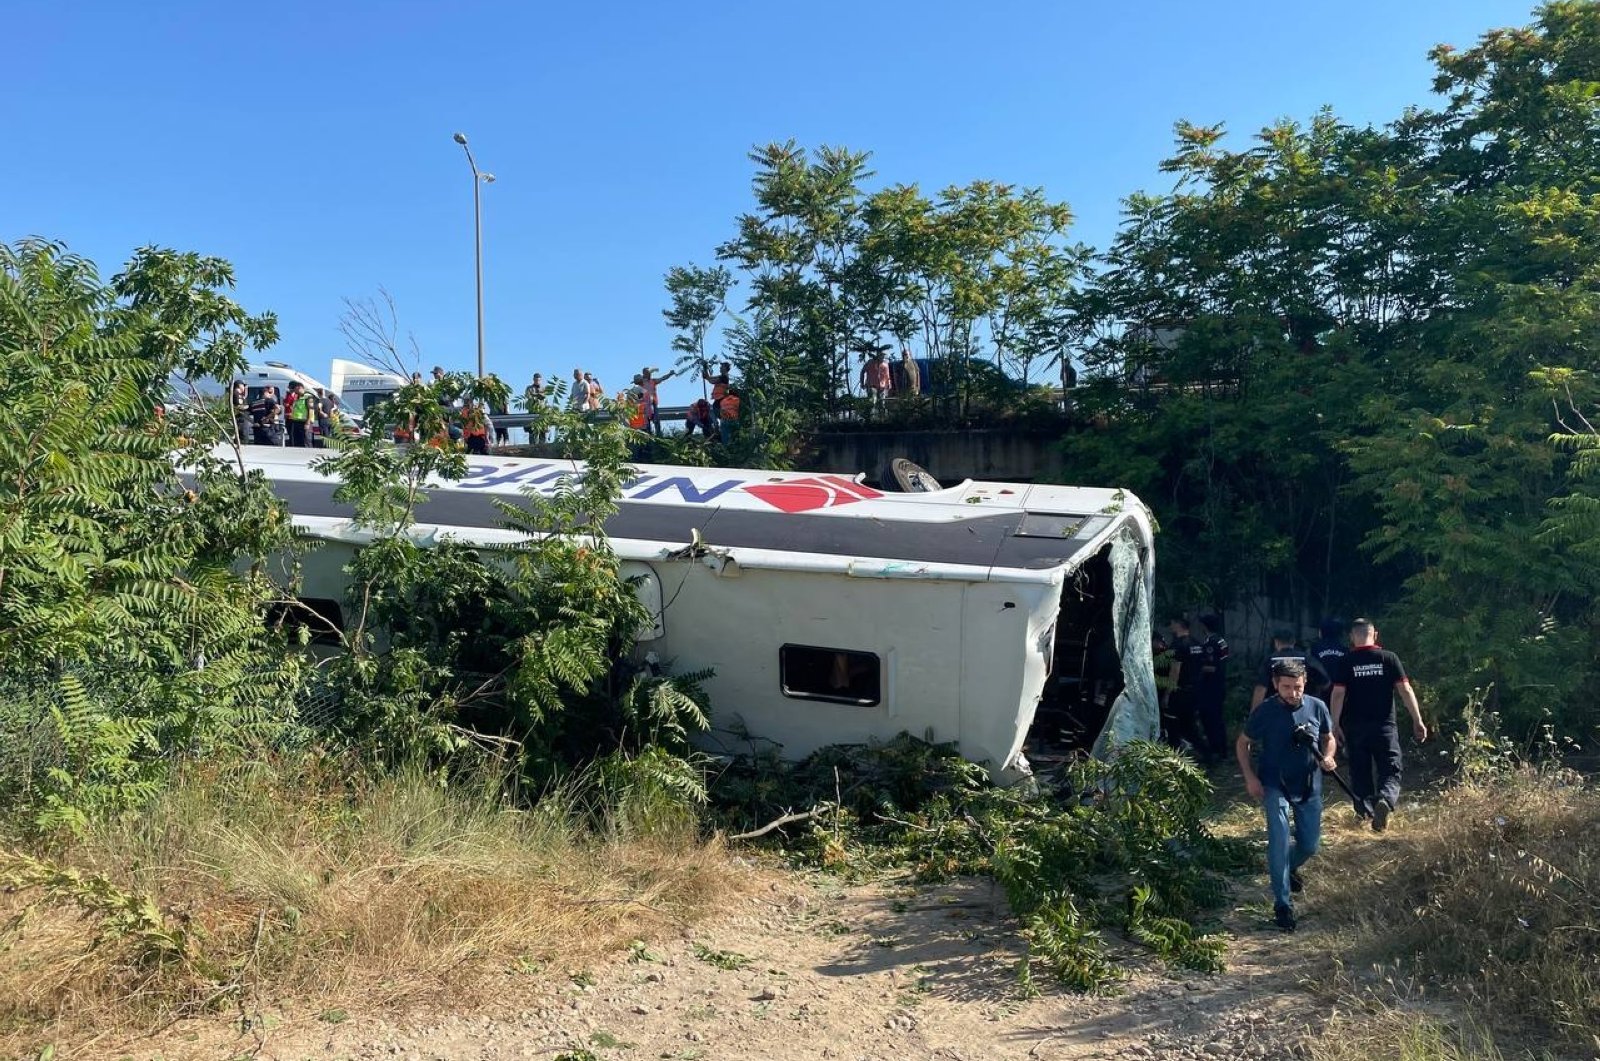 Enam tewas saat bus terbalik di barat laut Turki